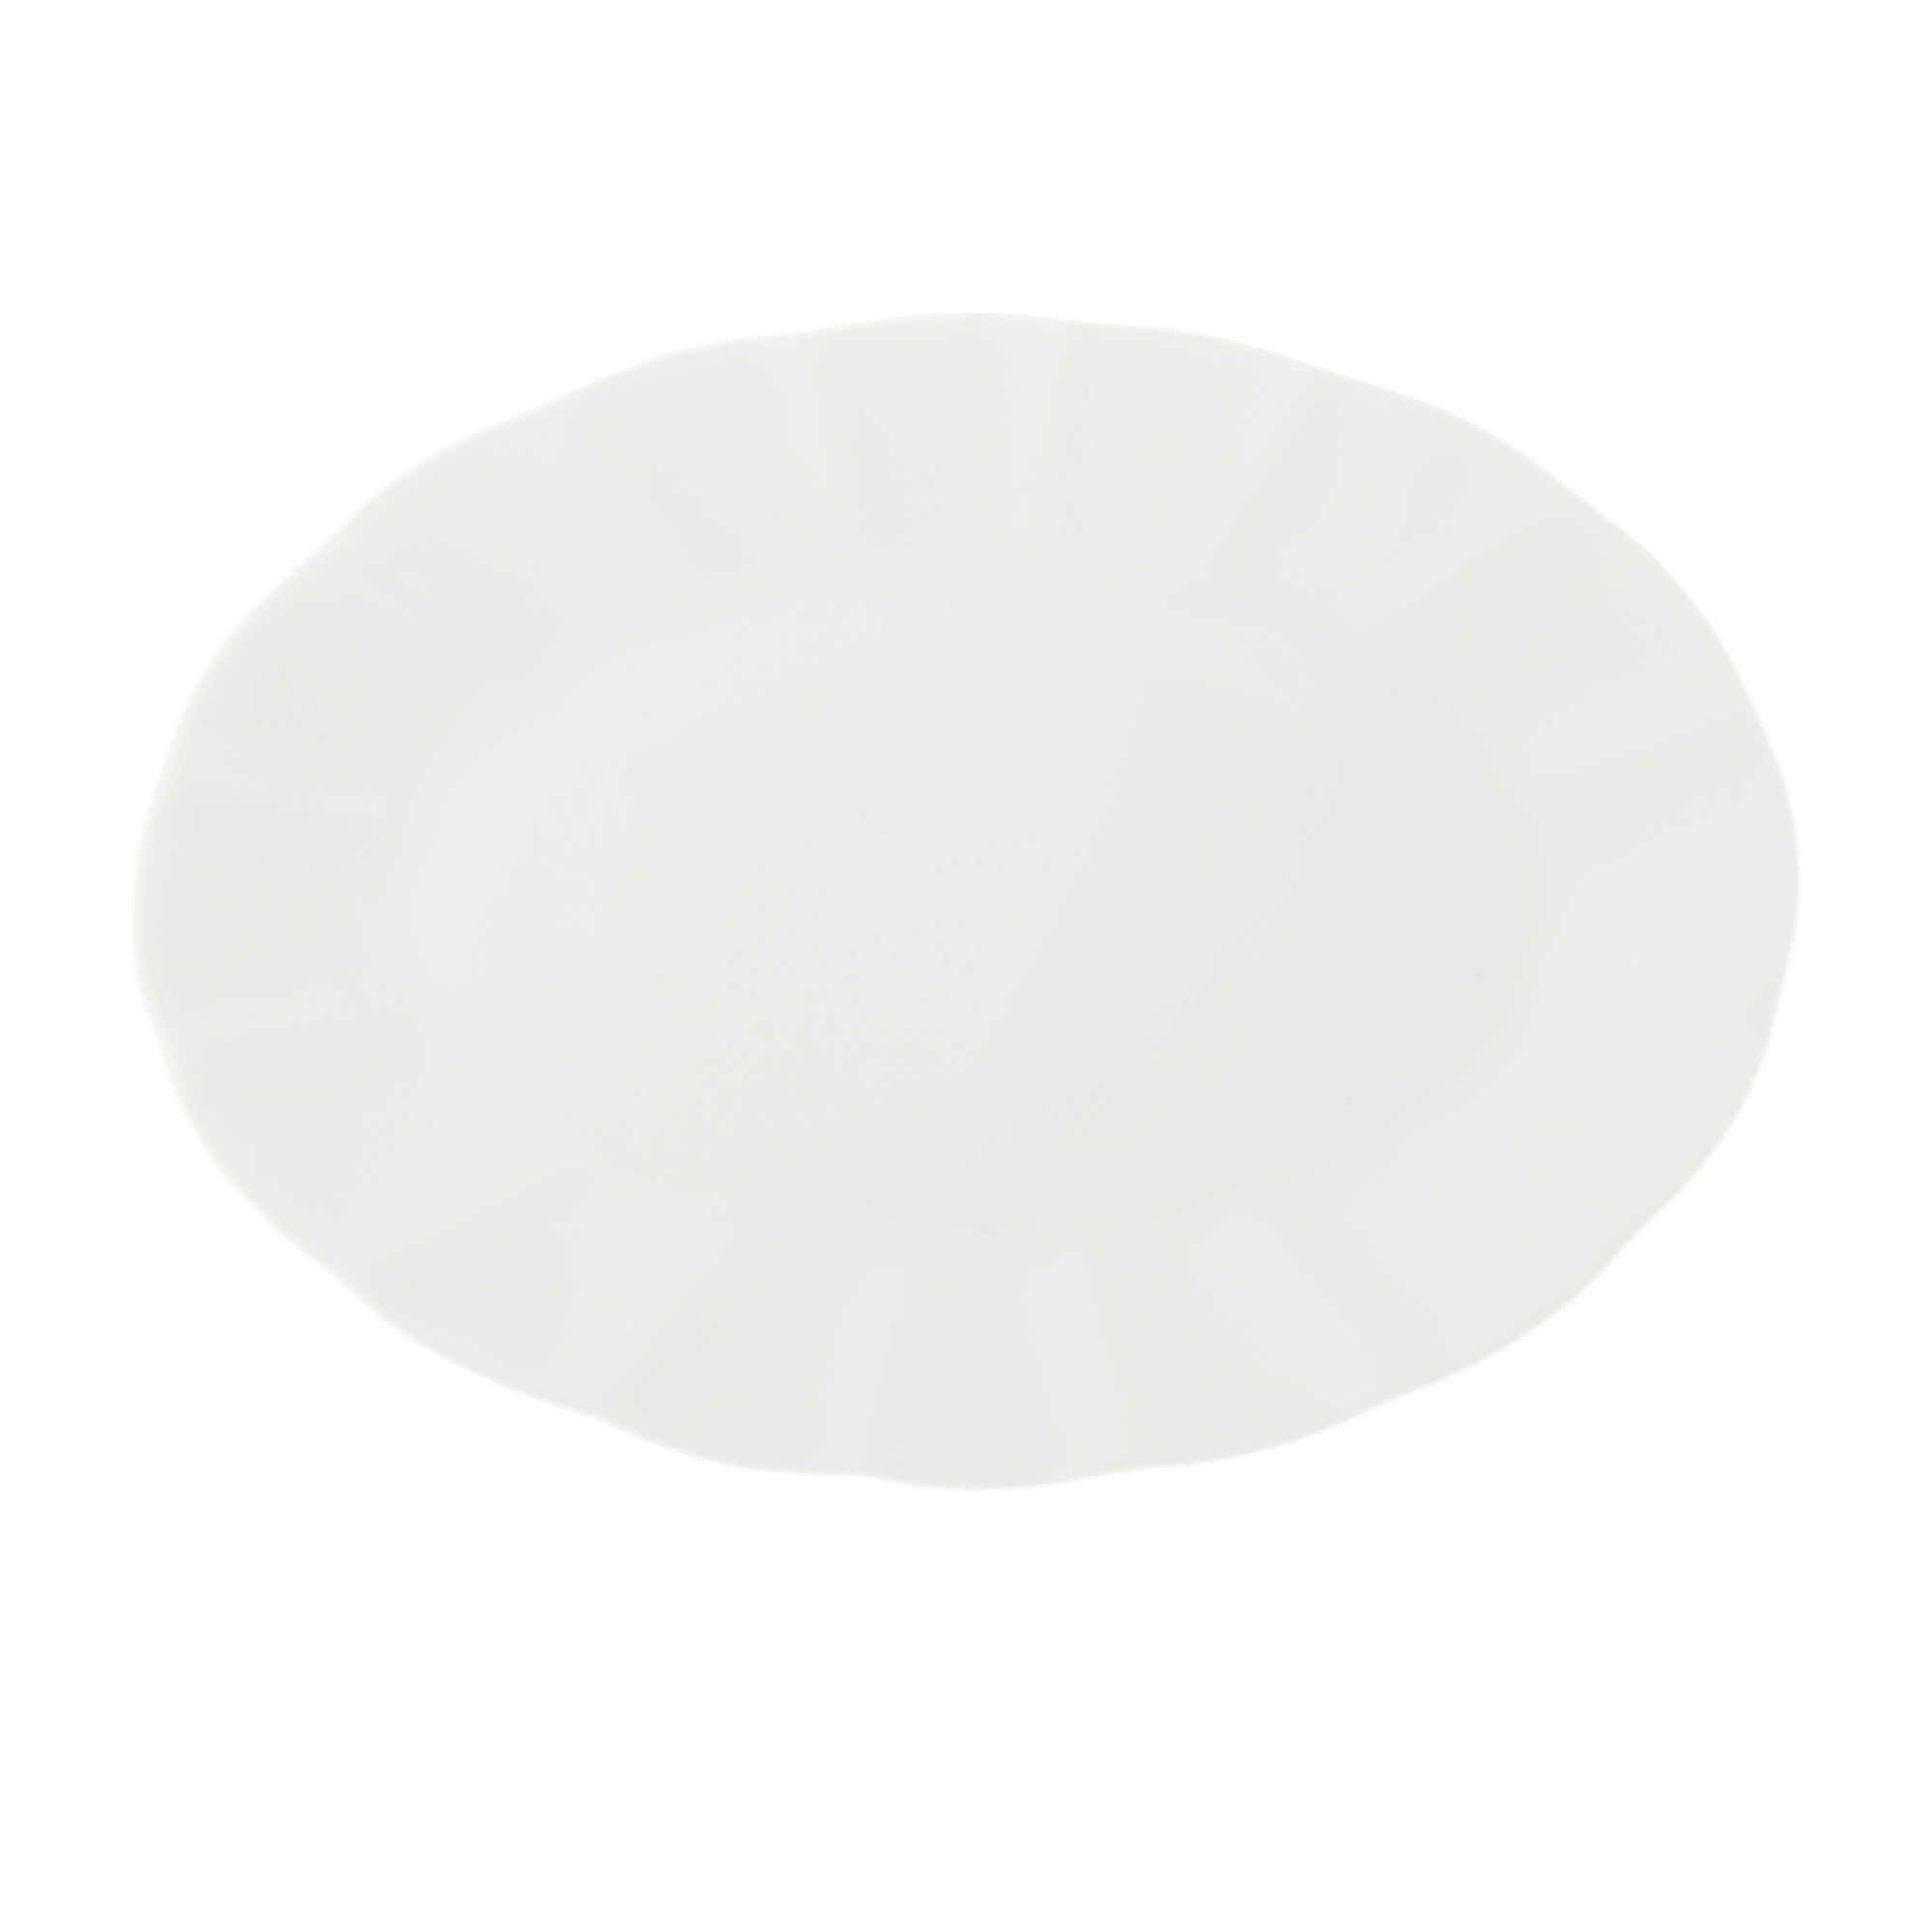 фото Блюдо овальное hatori 23 см белый